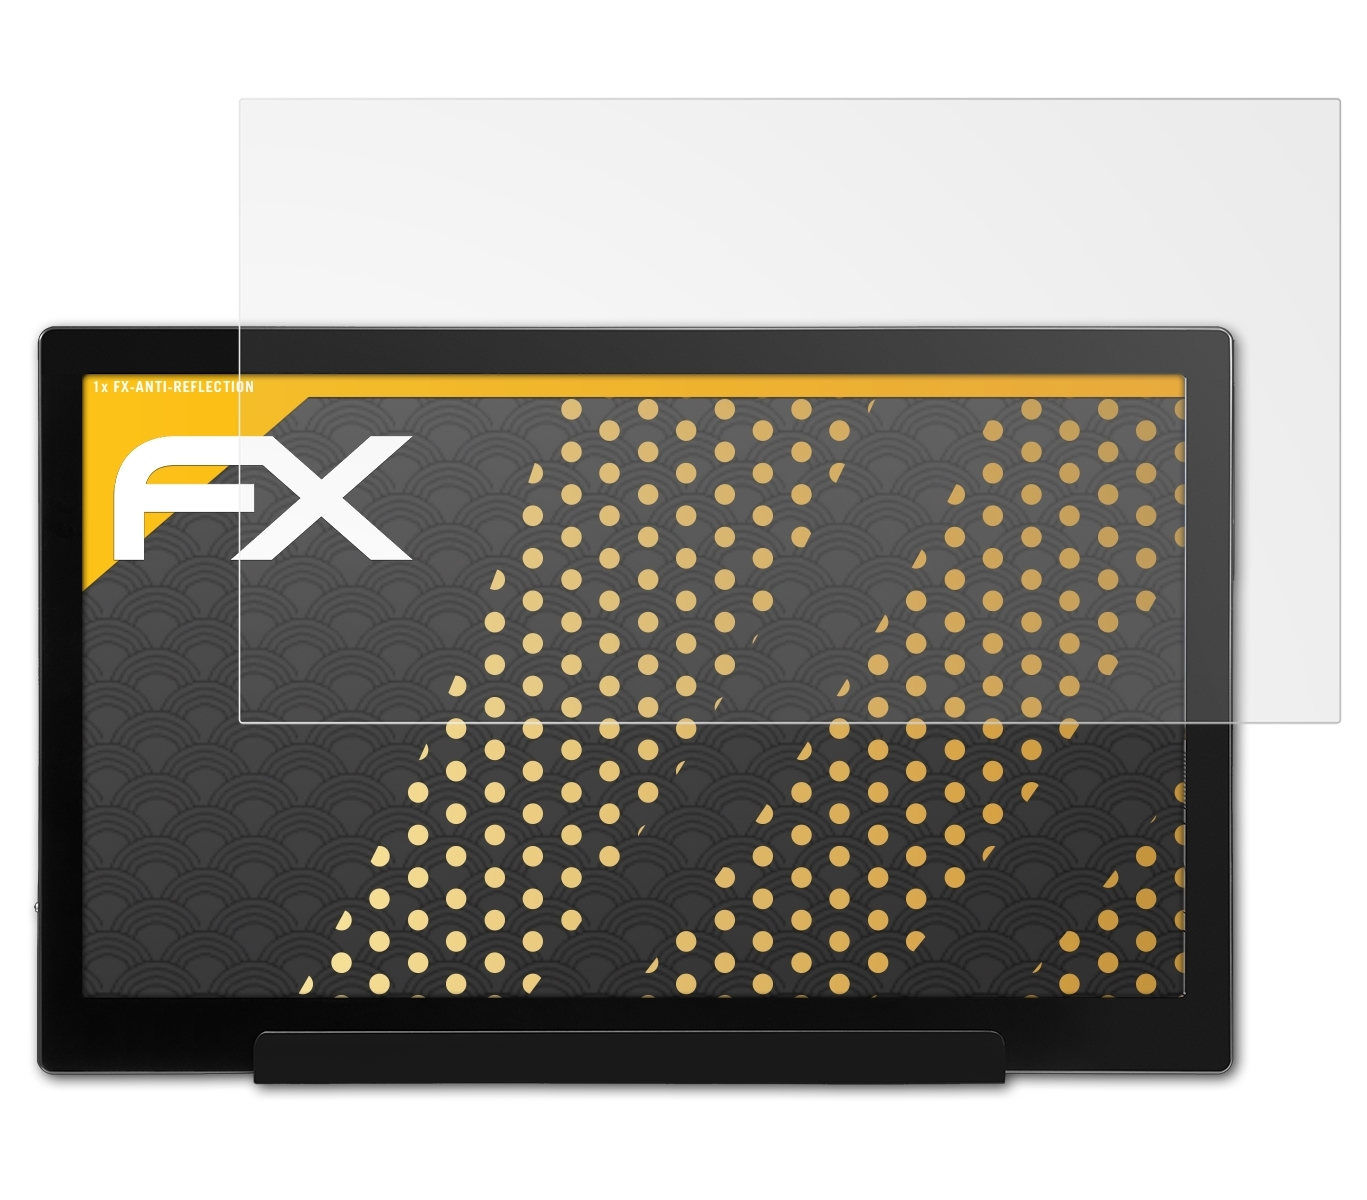 ATFOLIX FX-Antireflex Displayschutz(für AOC I1601FWUX)